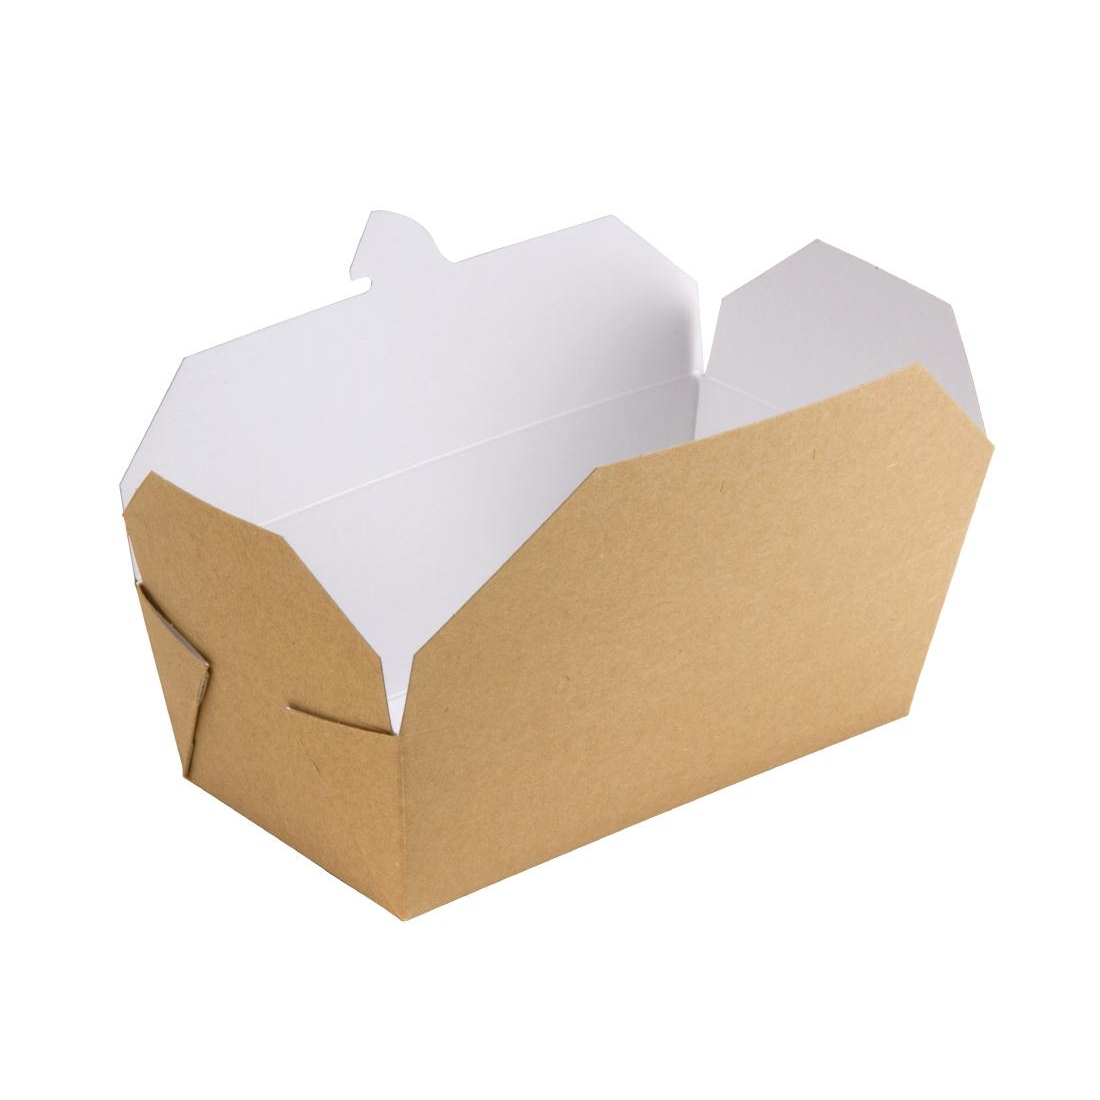 dm173_food-carton-rectangular-open